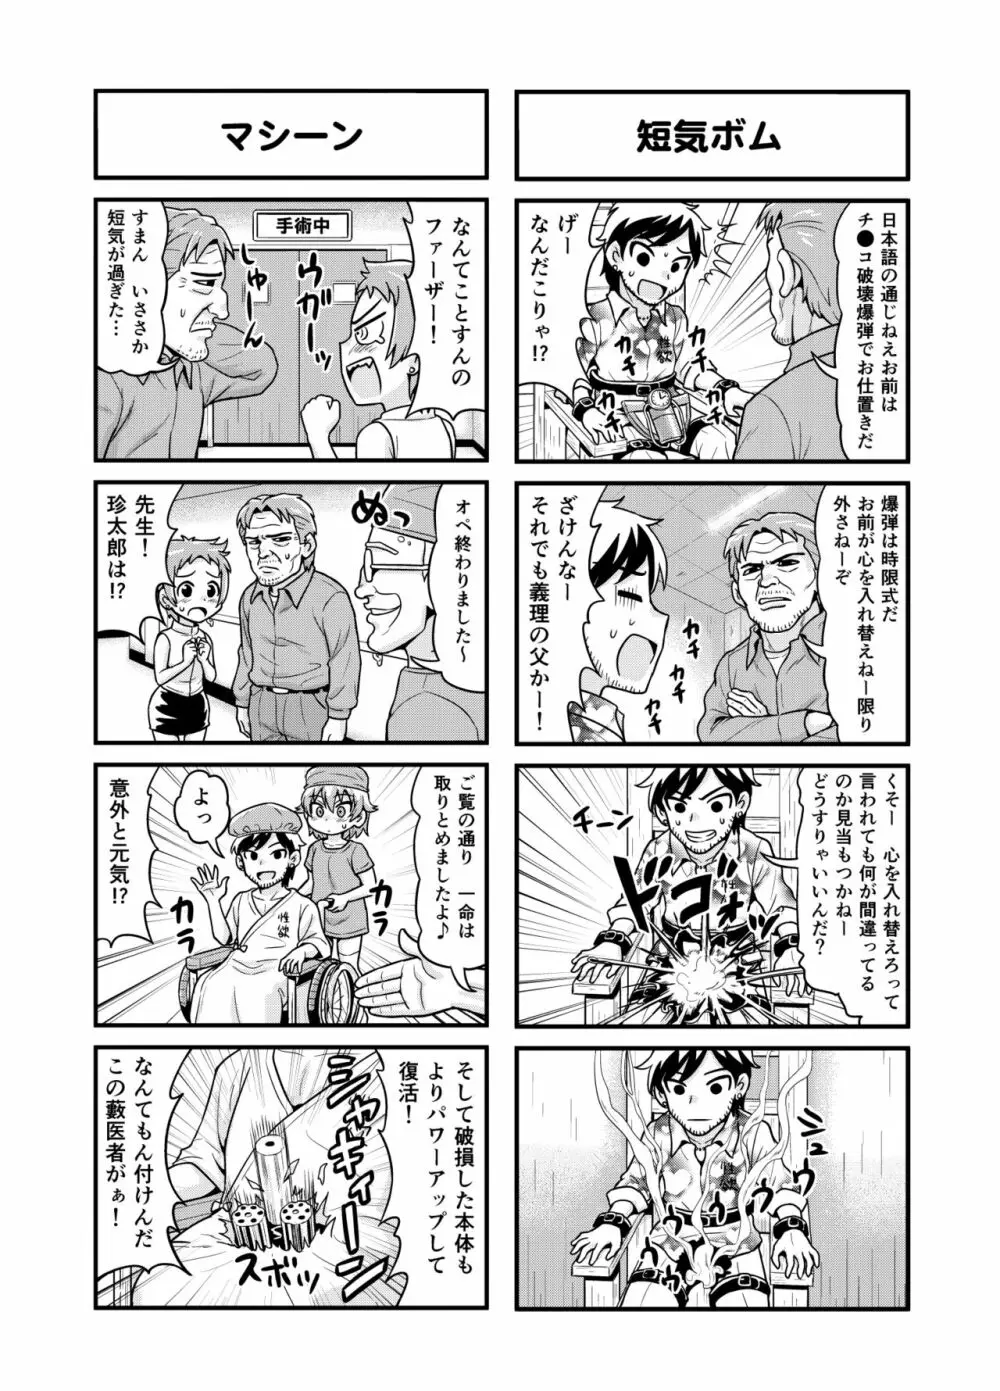 のんきBOY 1-48 - page141